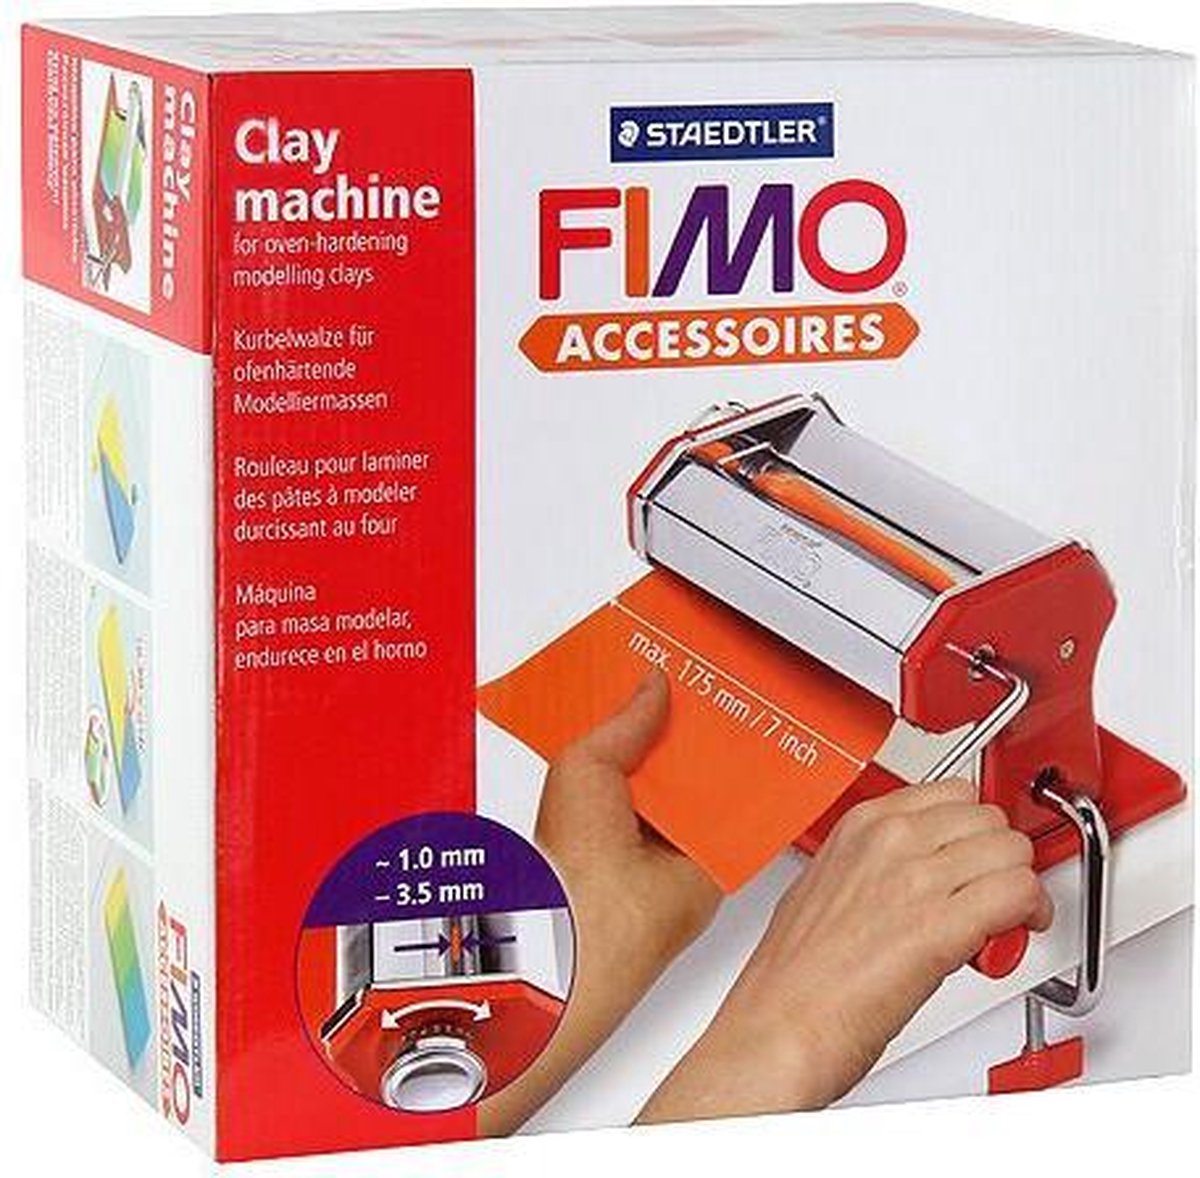 Machine à pâte Fimo 8713 | bol.com